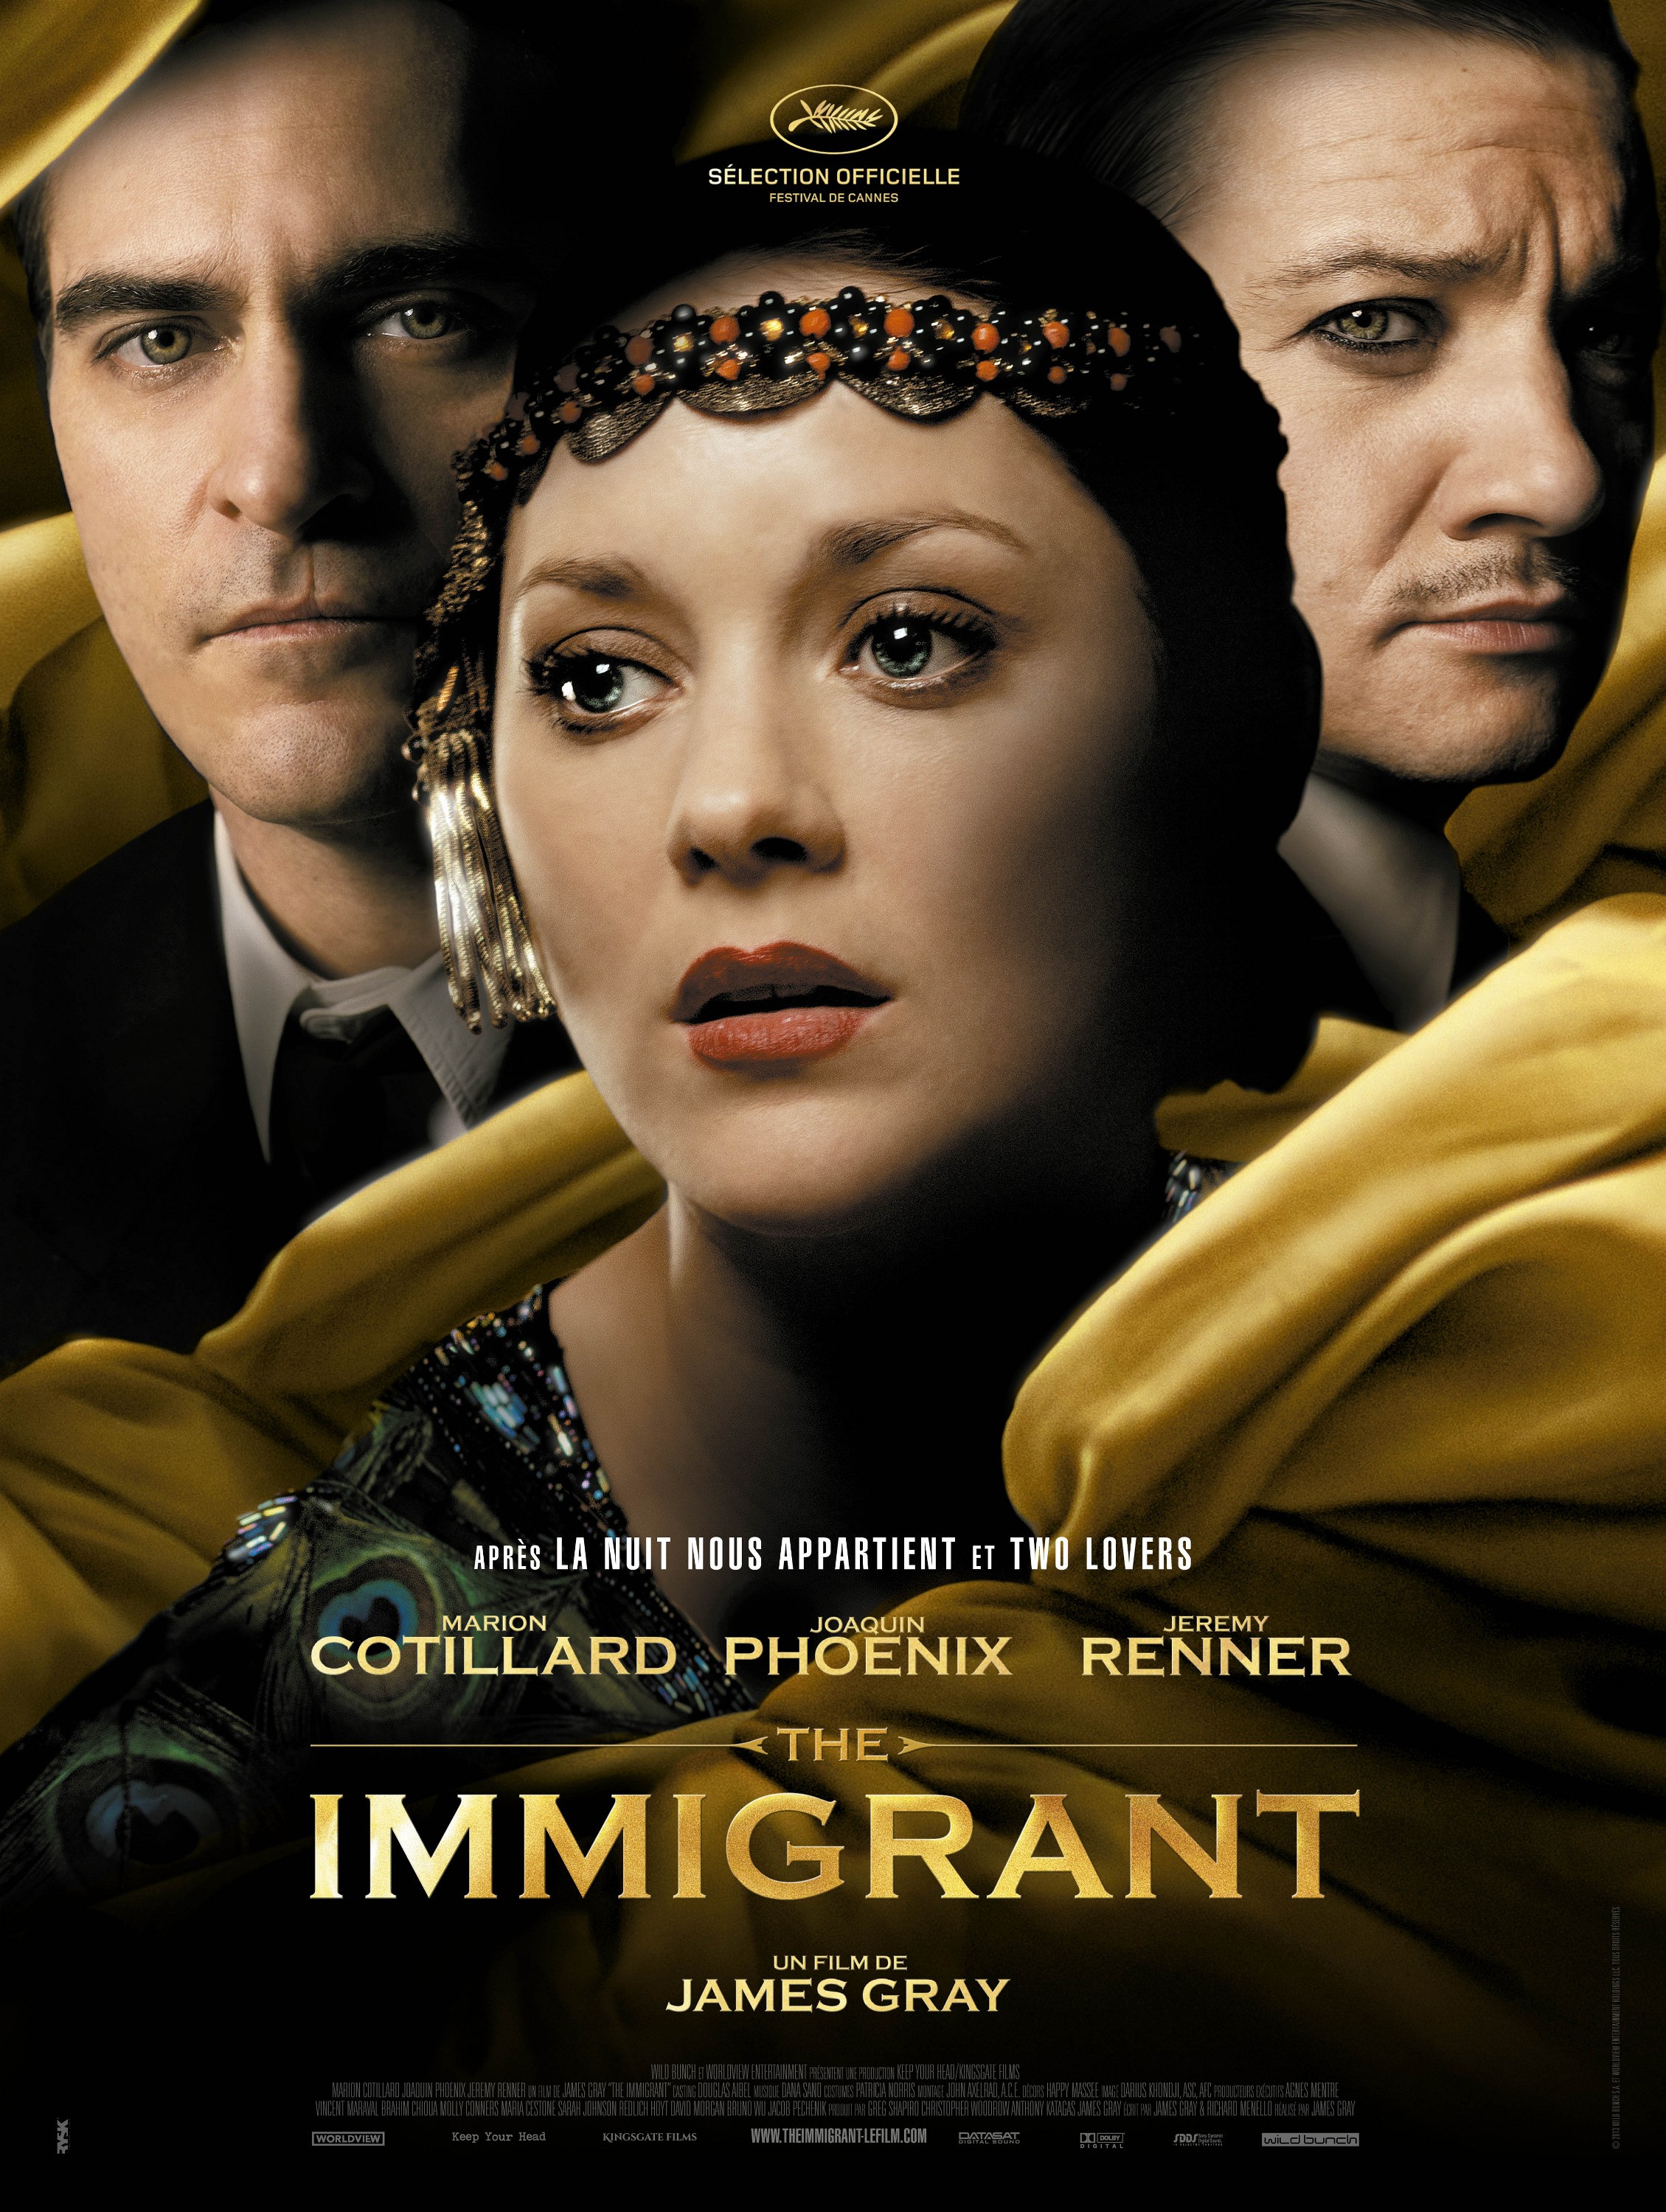 Resultado de imagen para the immigrant movie poster